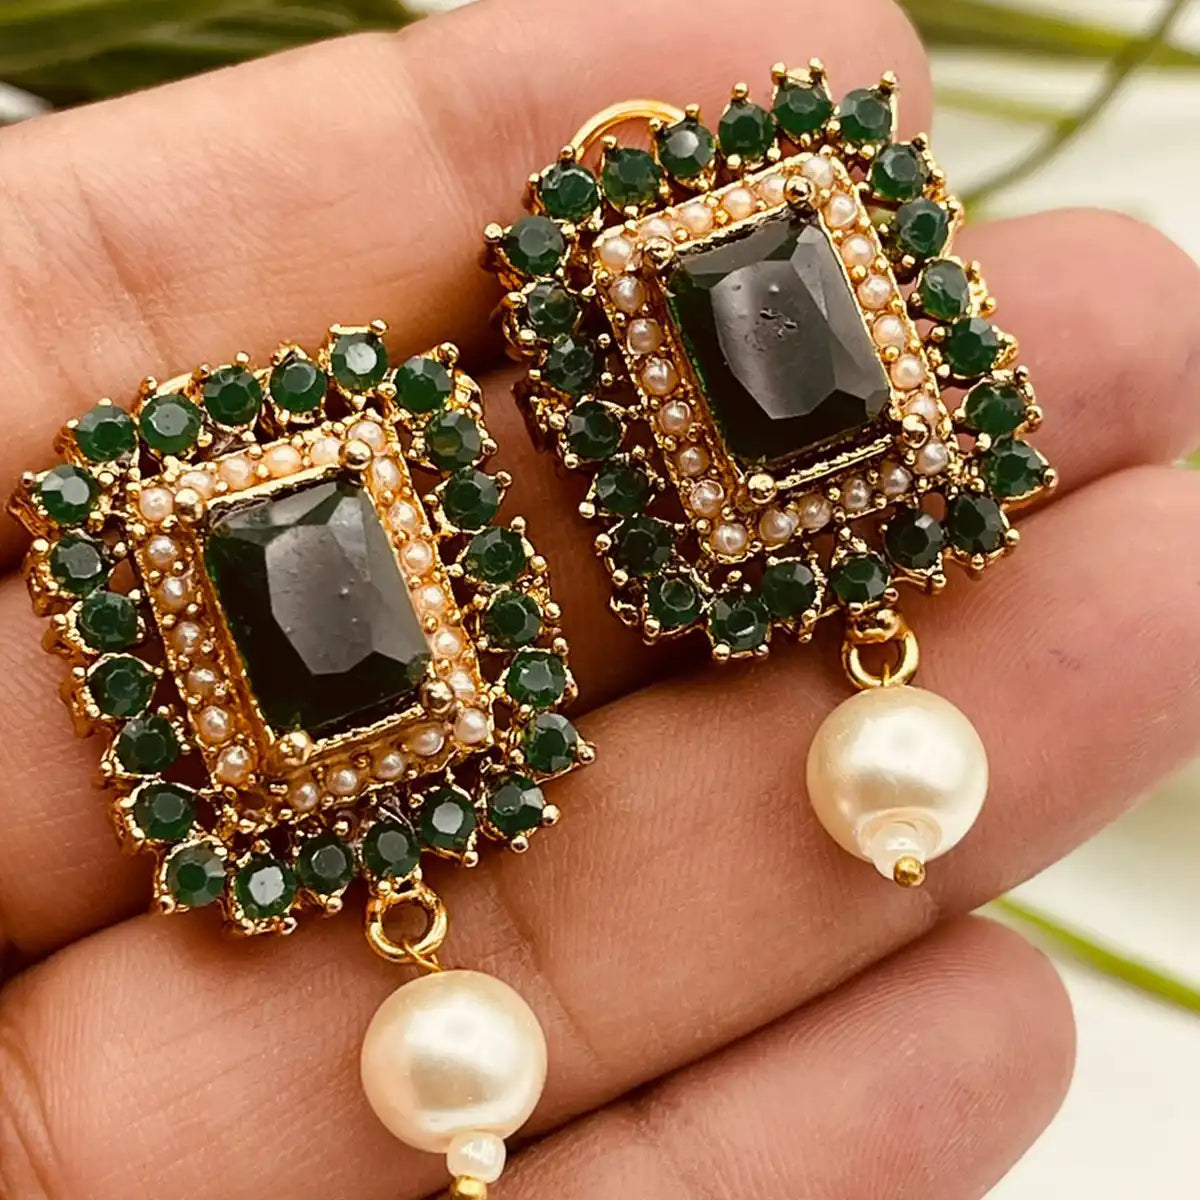 earrings online shopping in pakistan njc-009 green